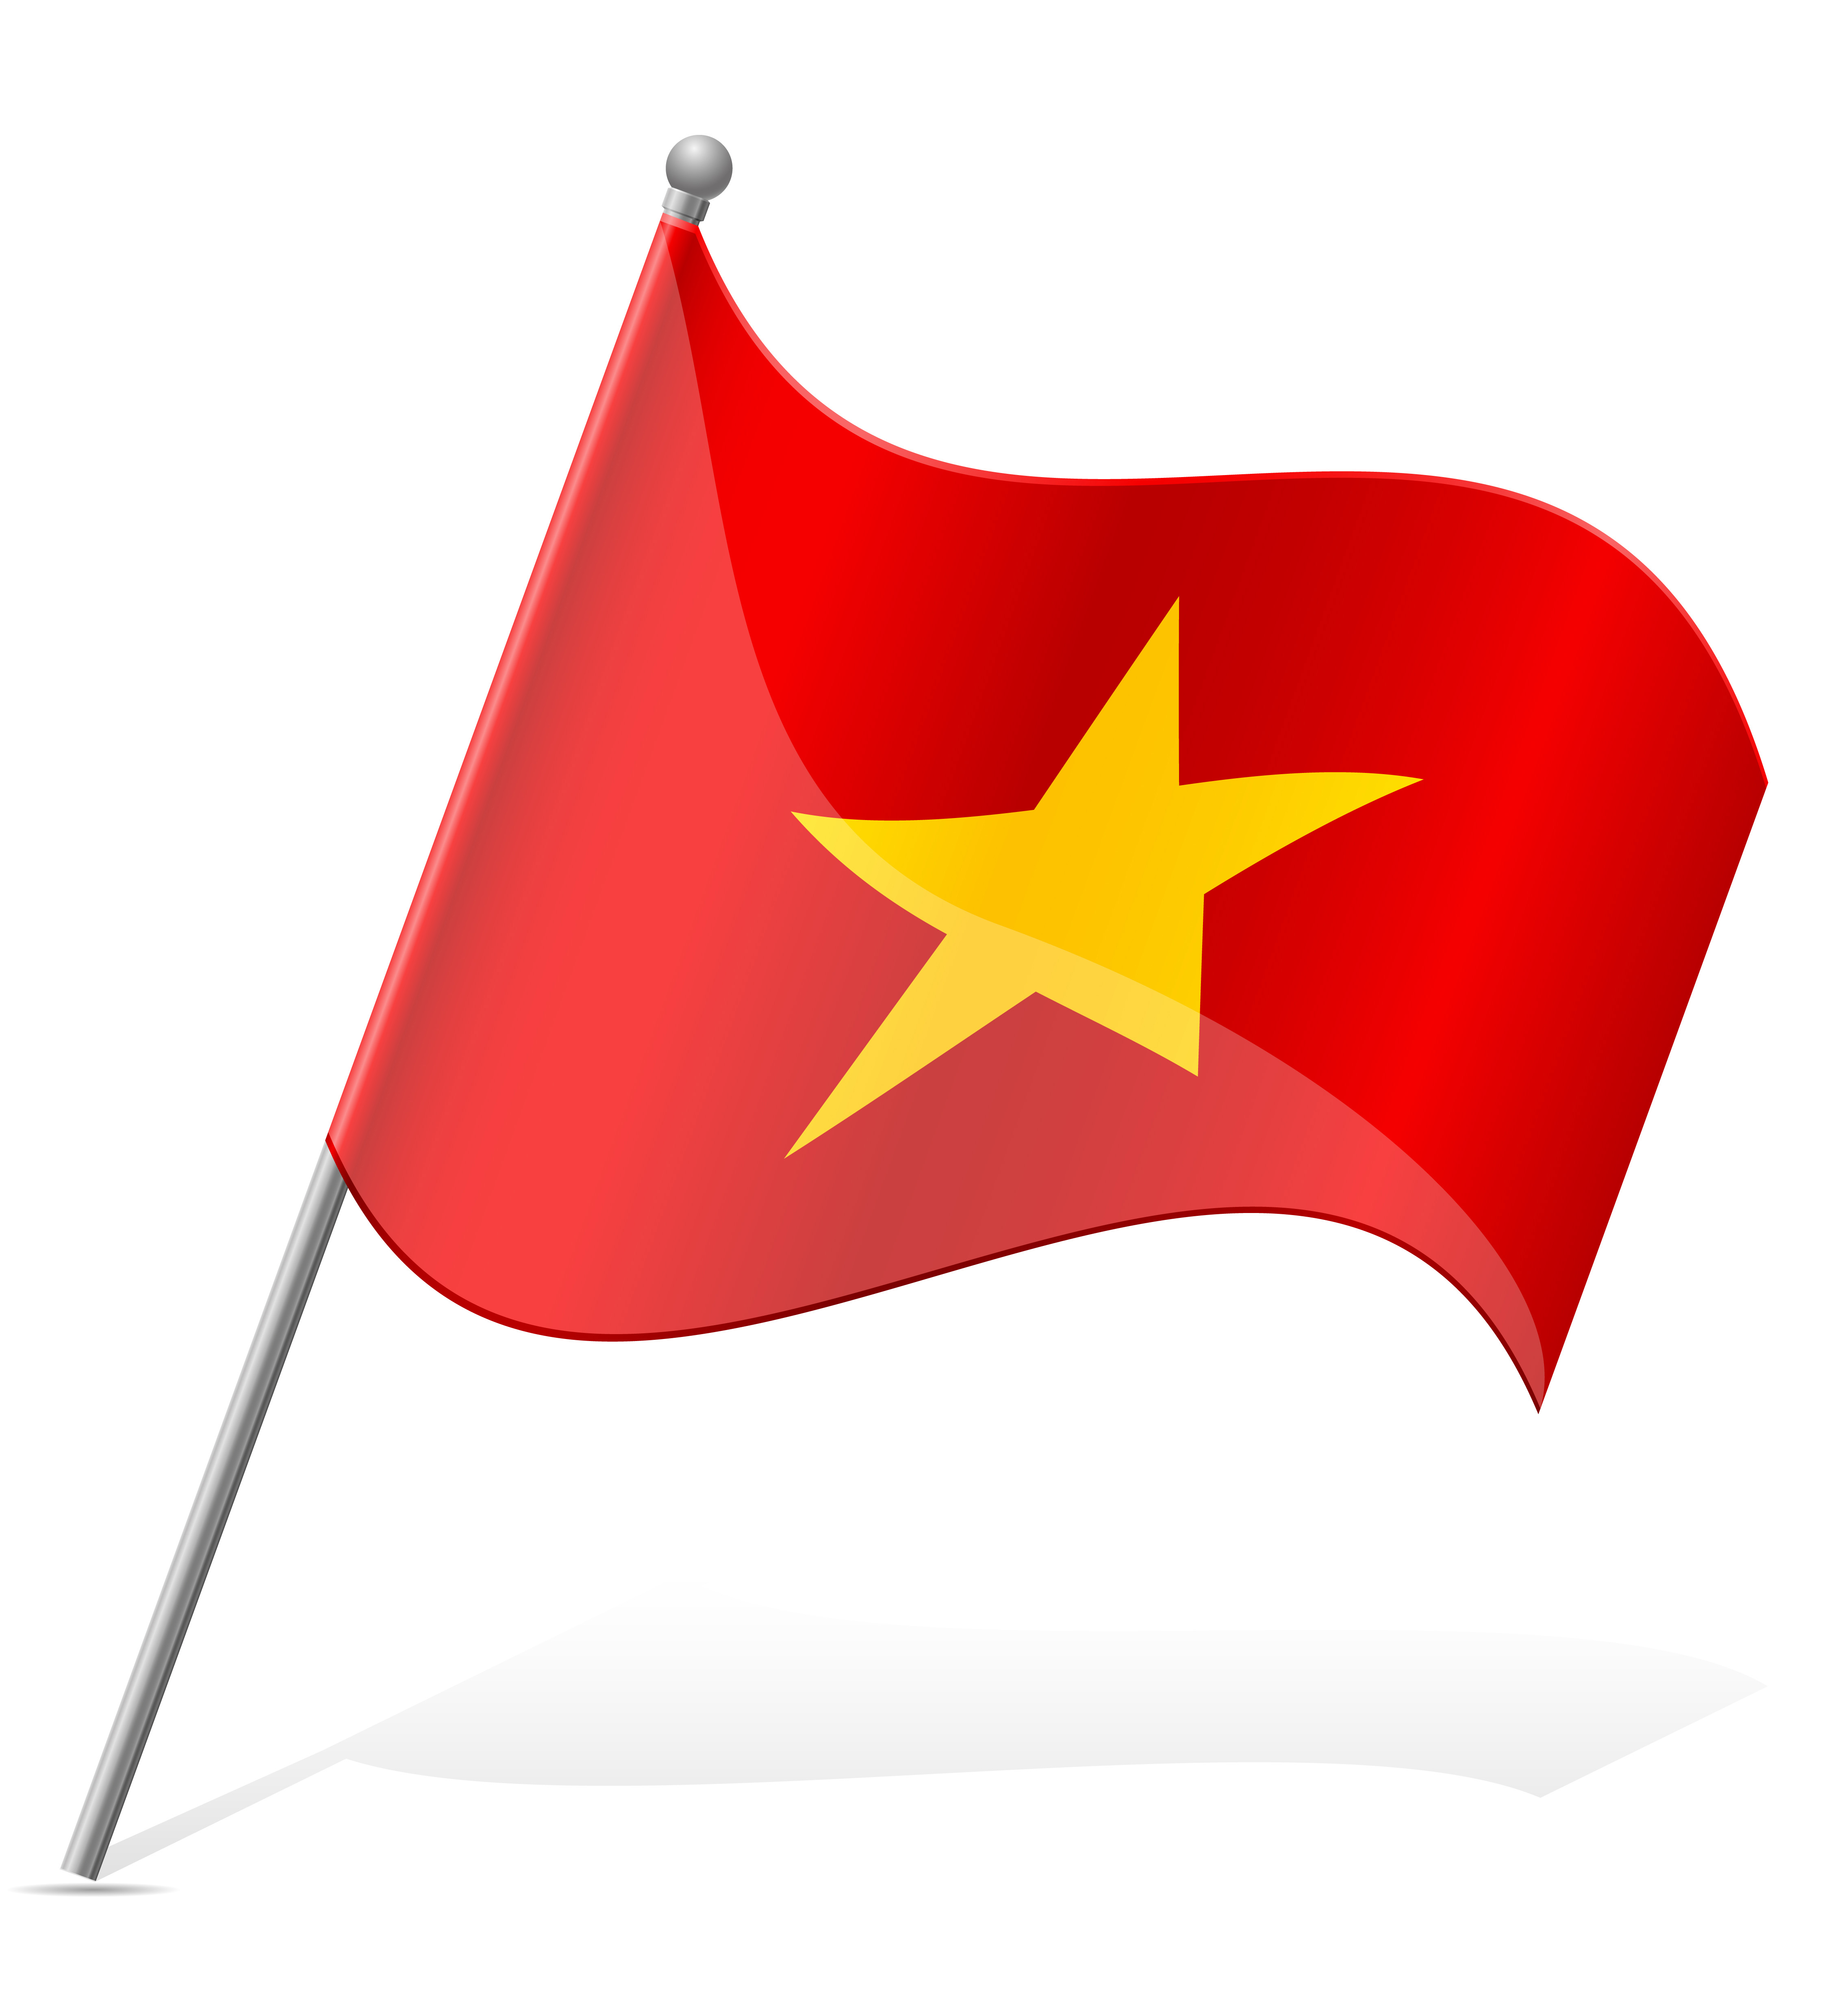 Download flag of Vietnam vector illustration - Download Free ...